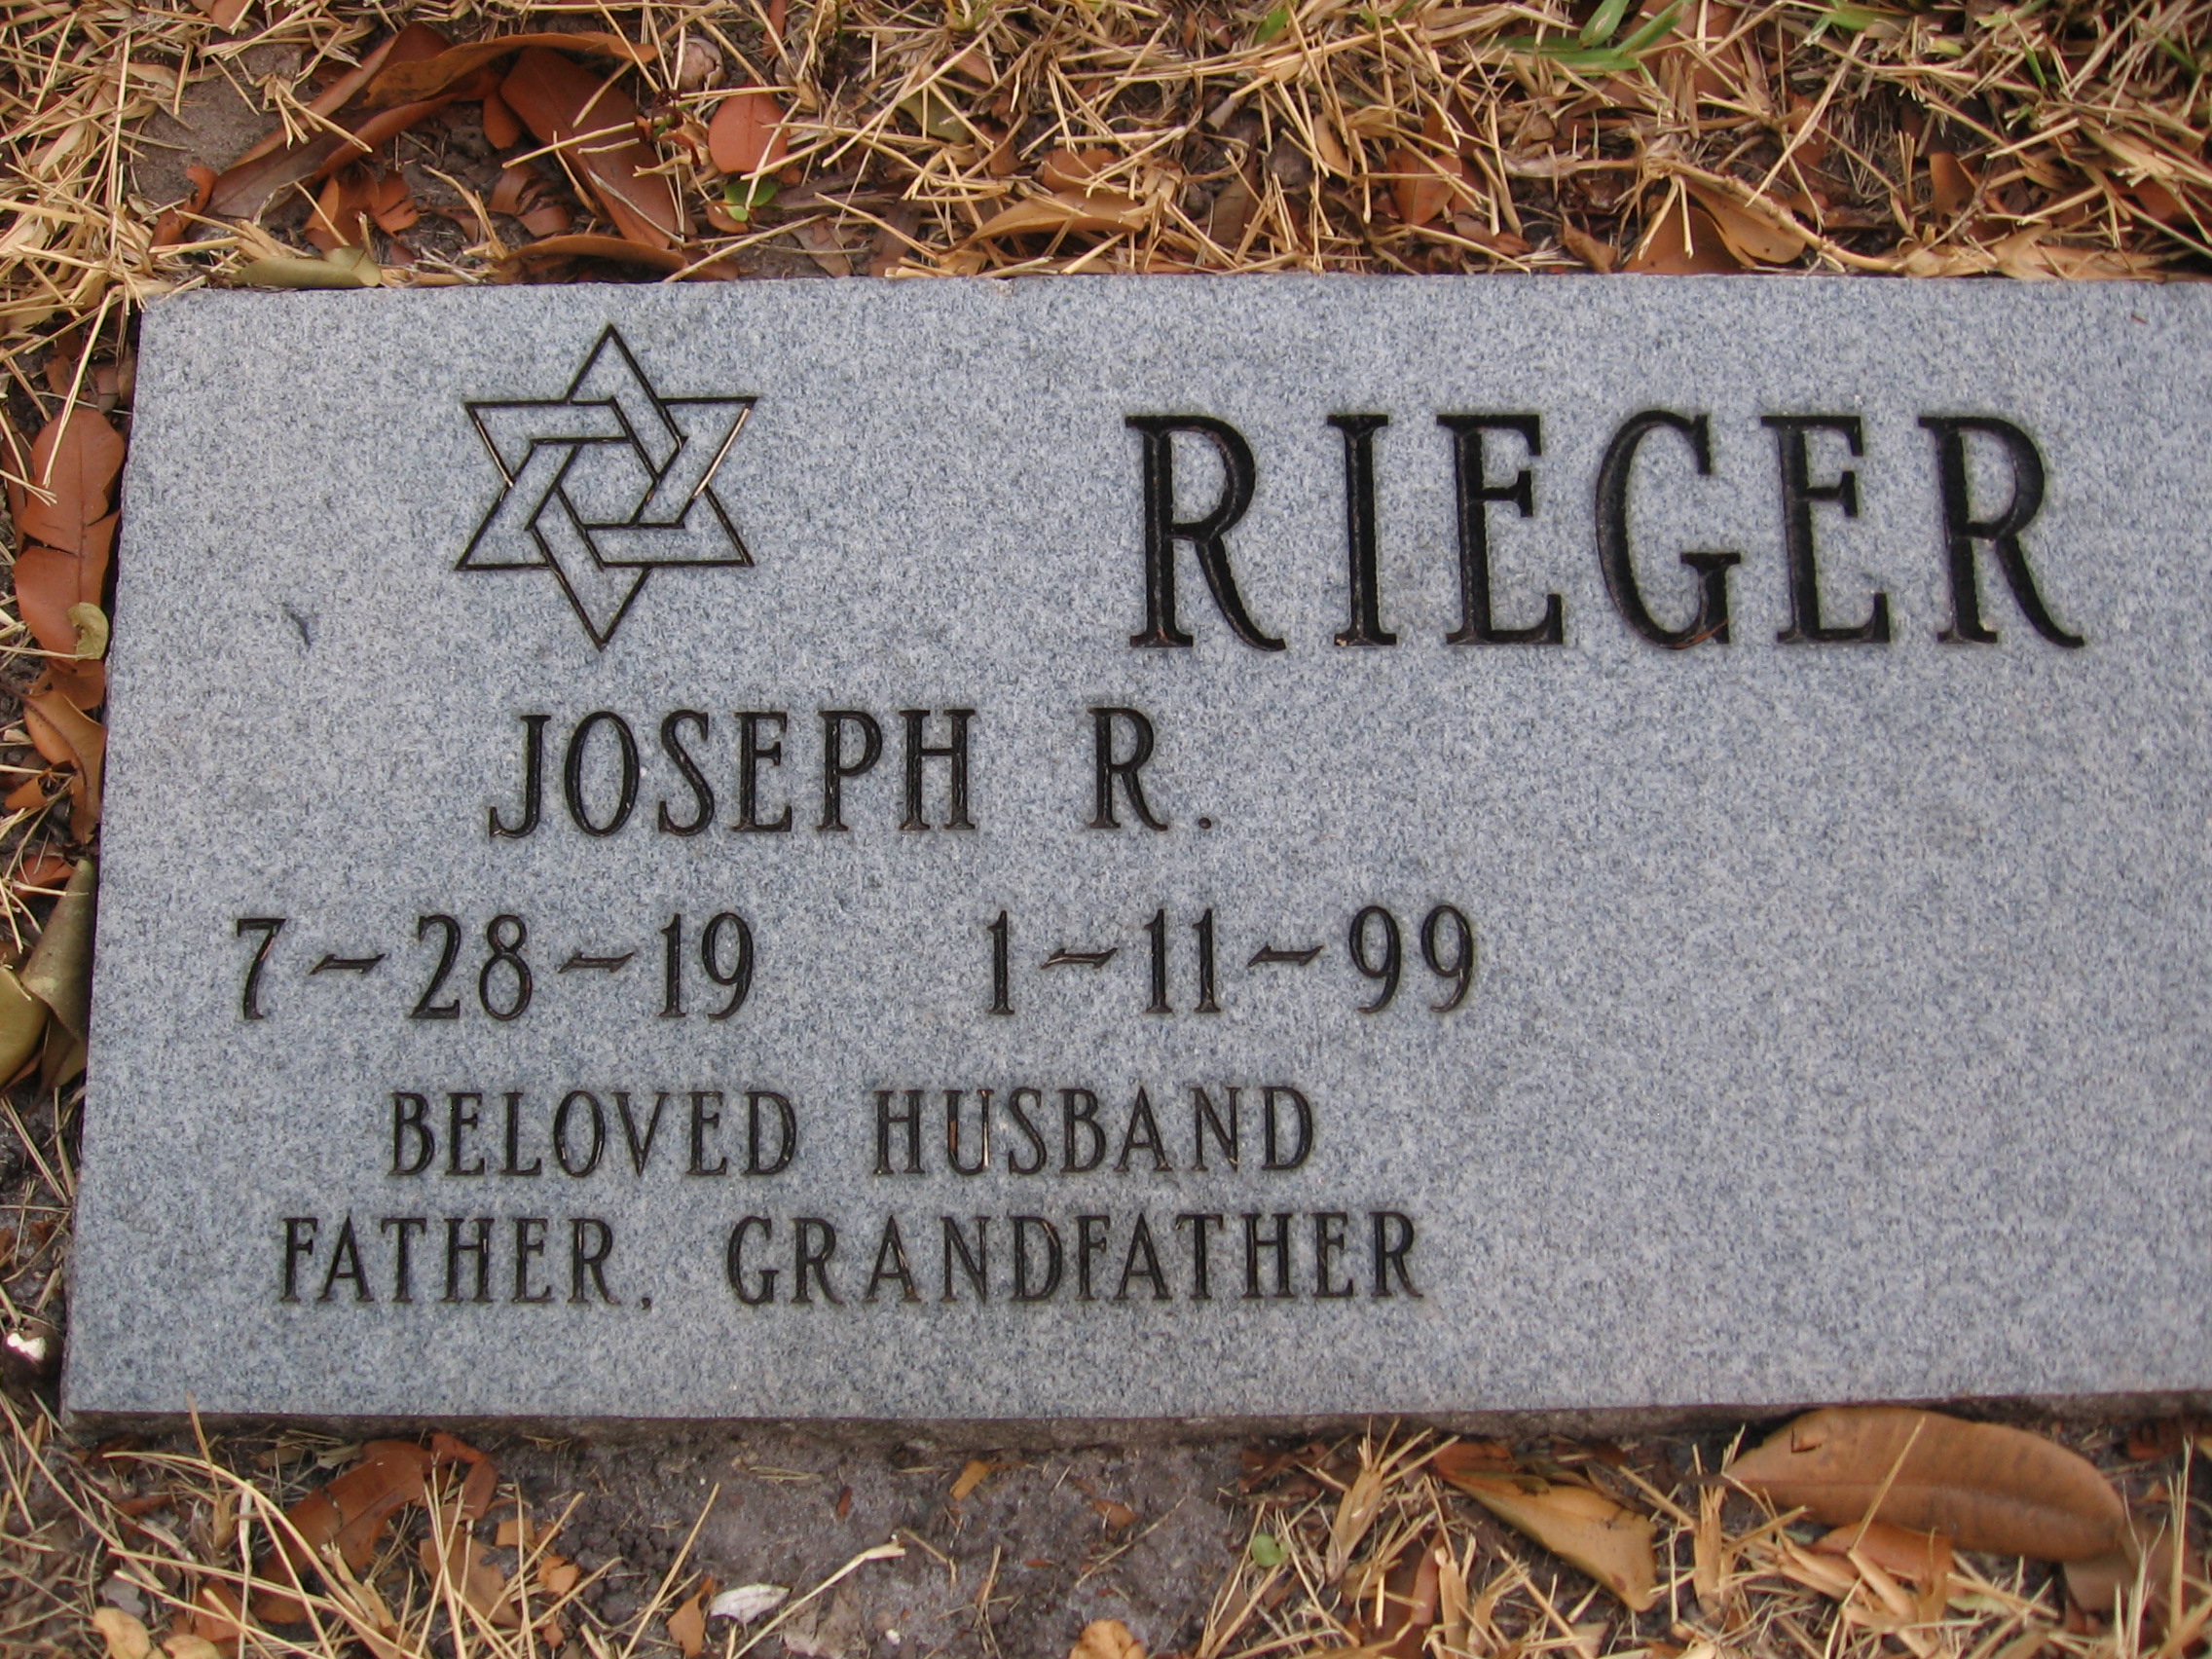 Joseph R Rieger